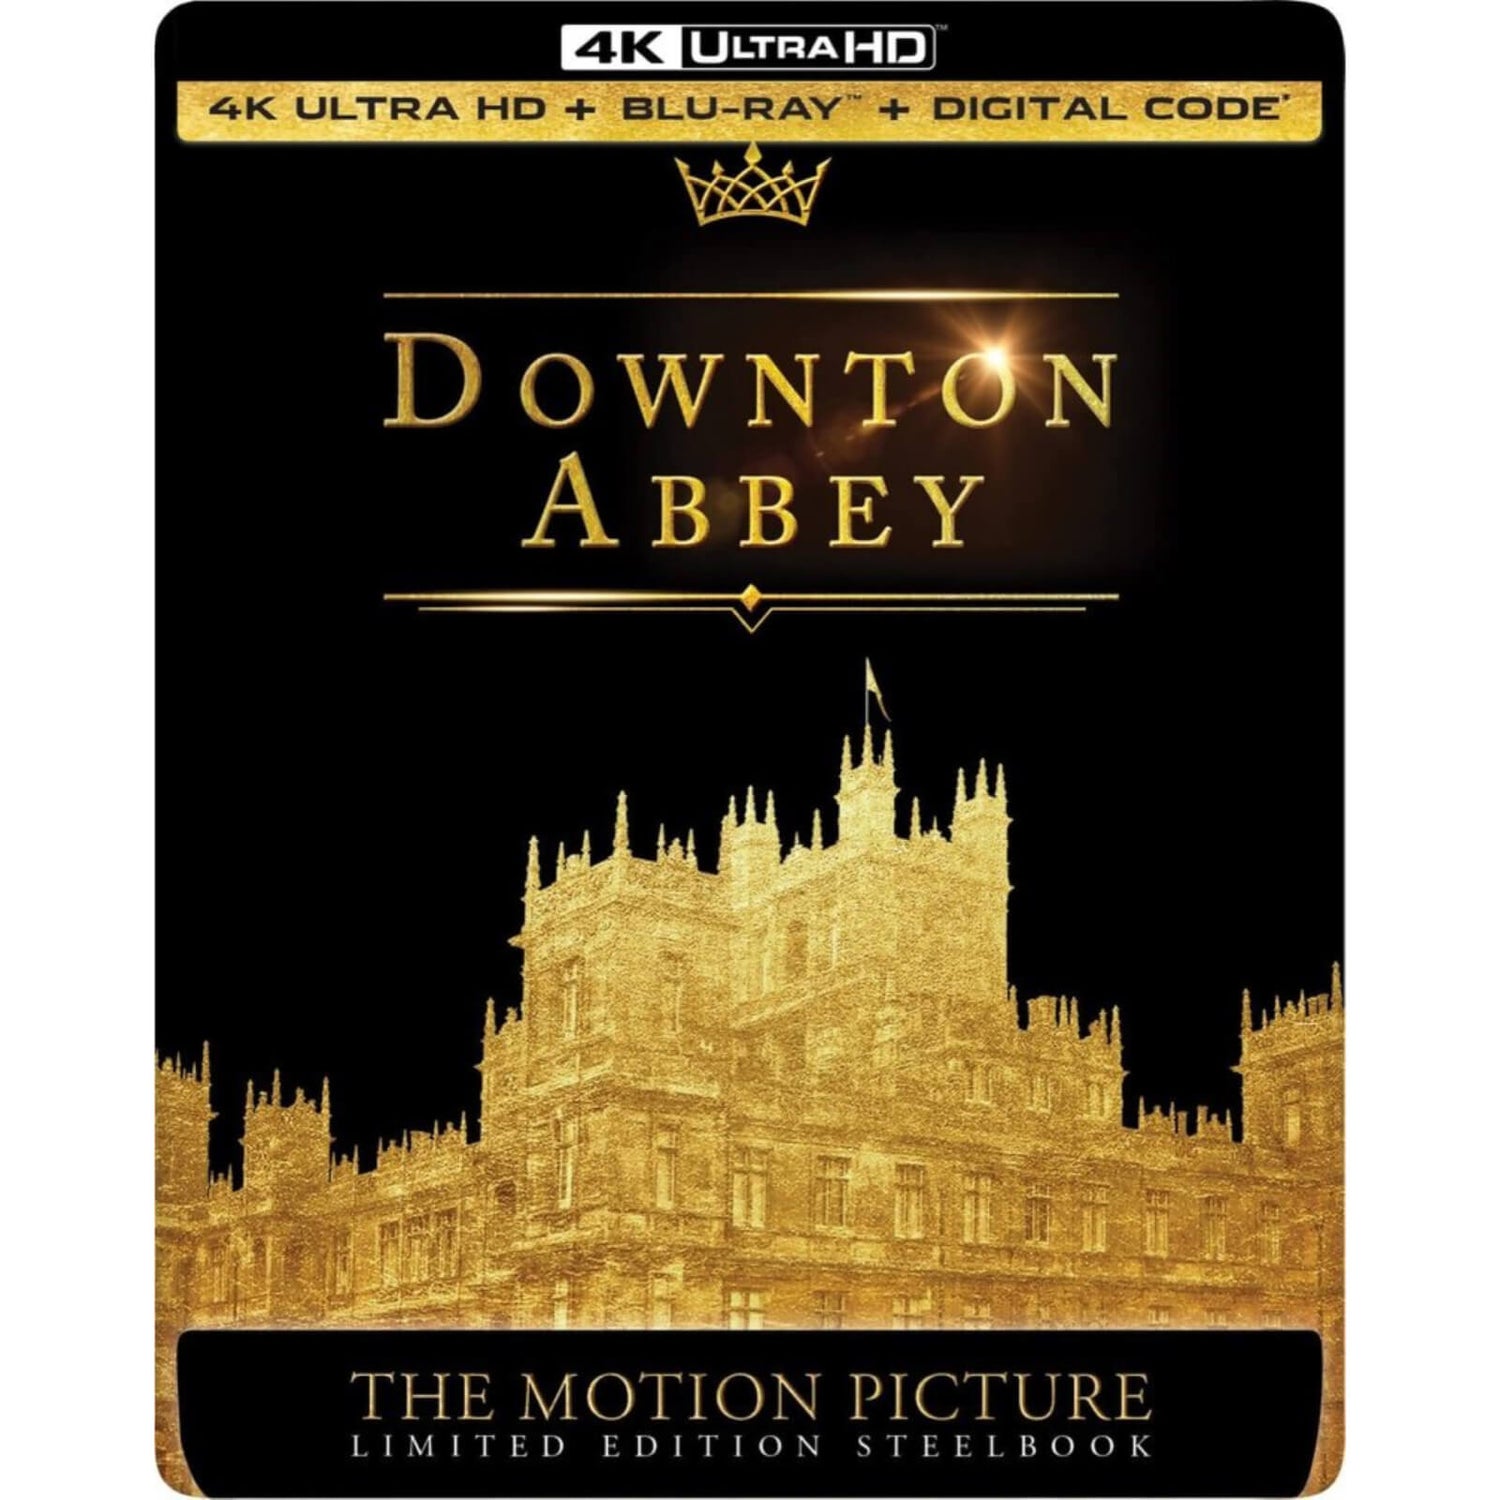 Downton Abbey - 4K Ultra HD Steelbook (Includes Blu-ray) (US Import)